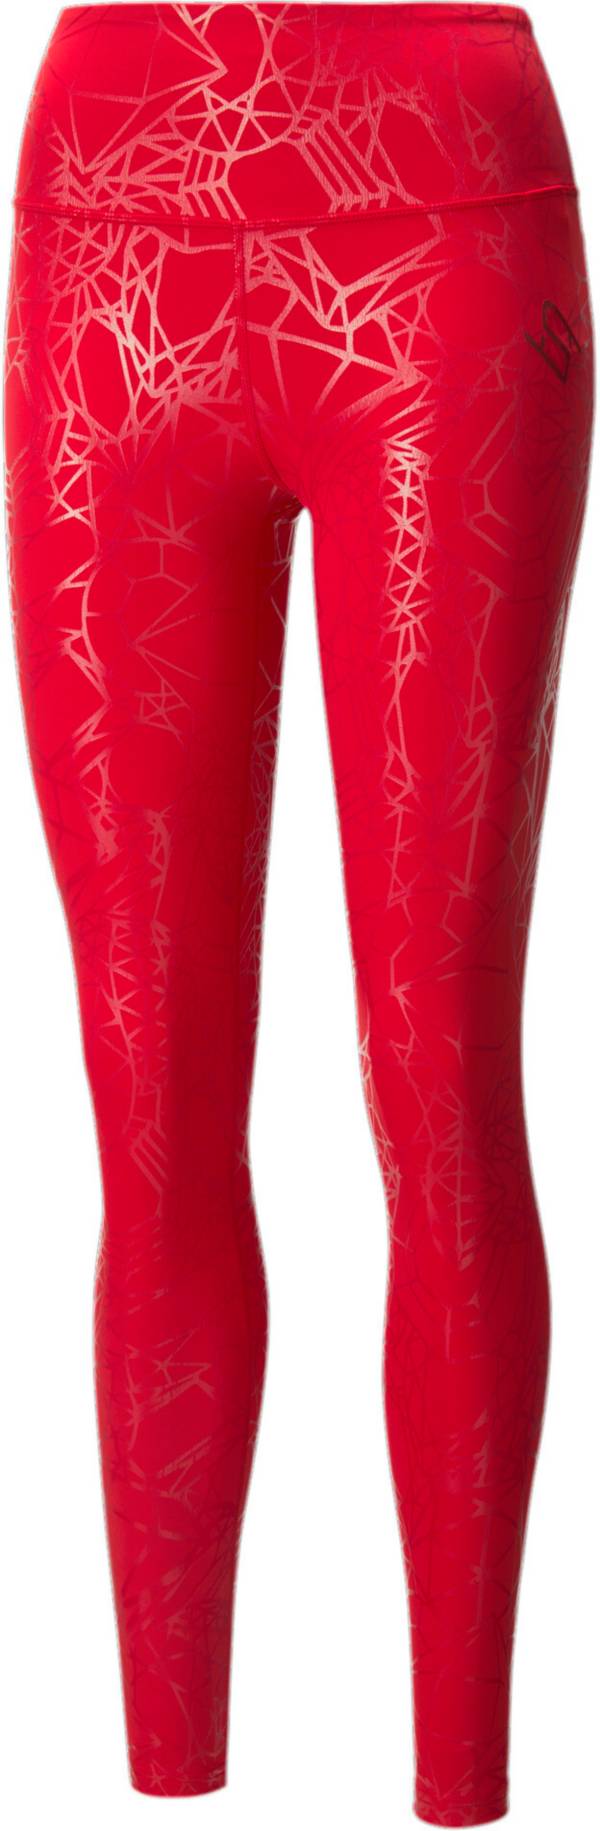 Lululemon Red Leggings - Size 10 - Gem